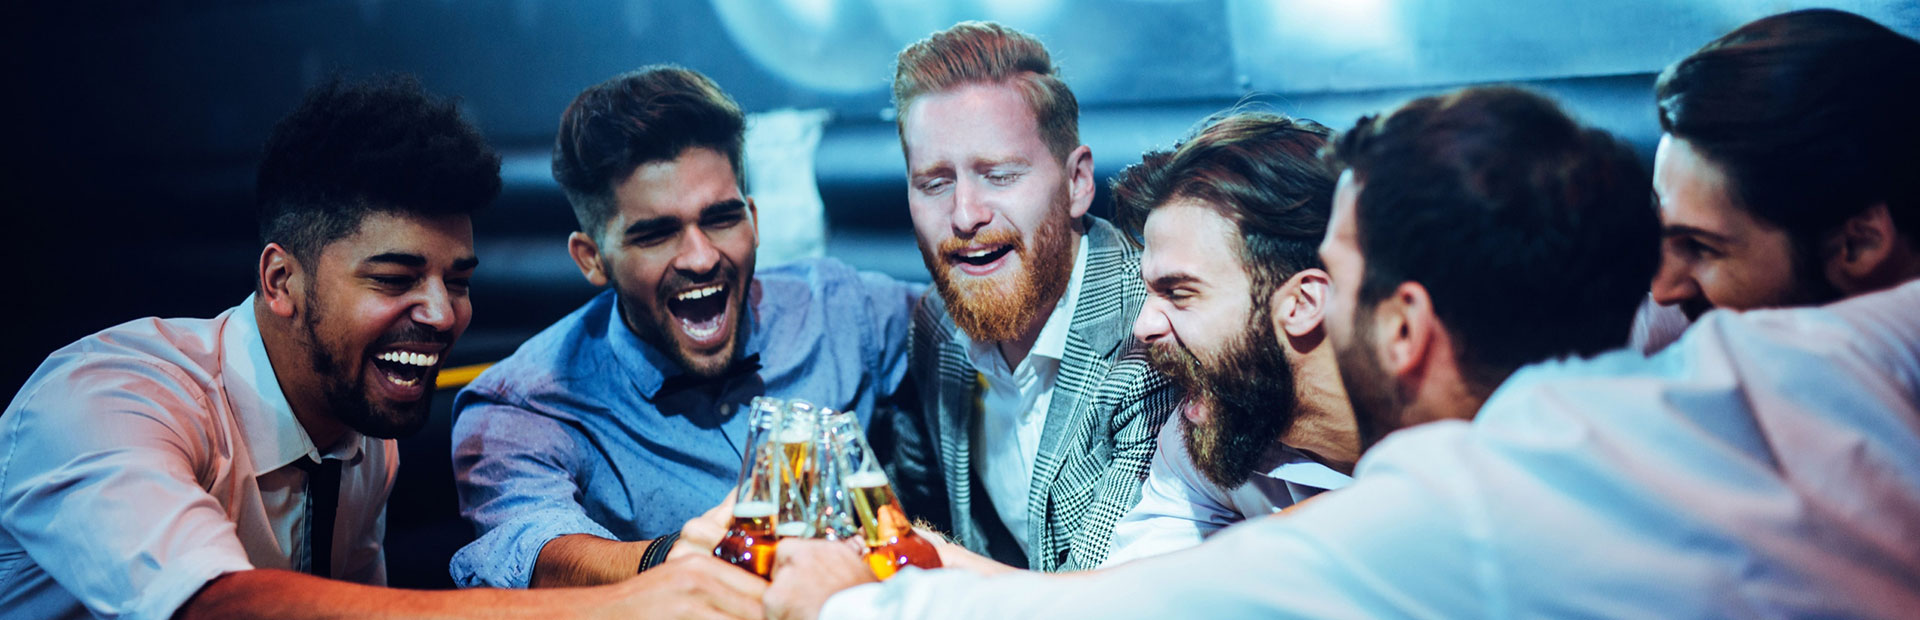 Junggesellenabschied - 6 Männer feiern mit Bier